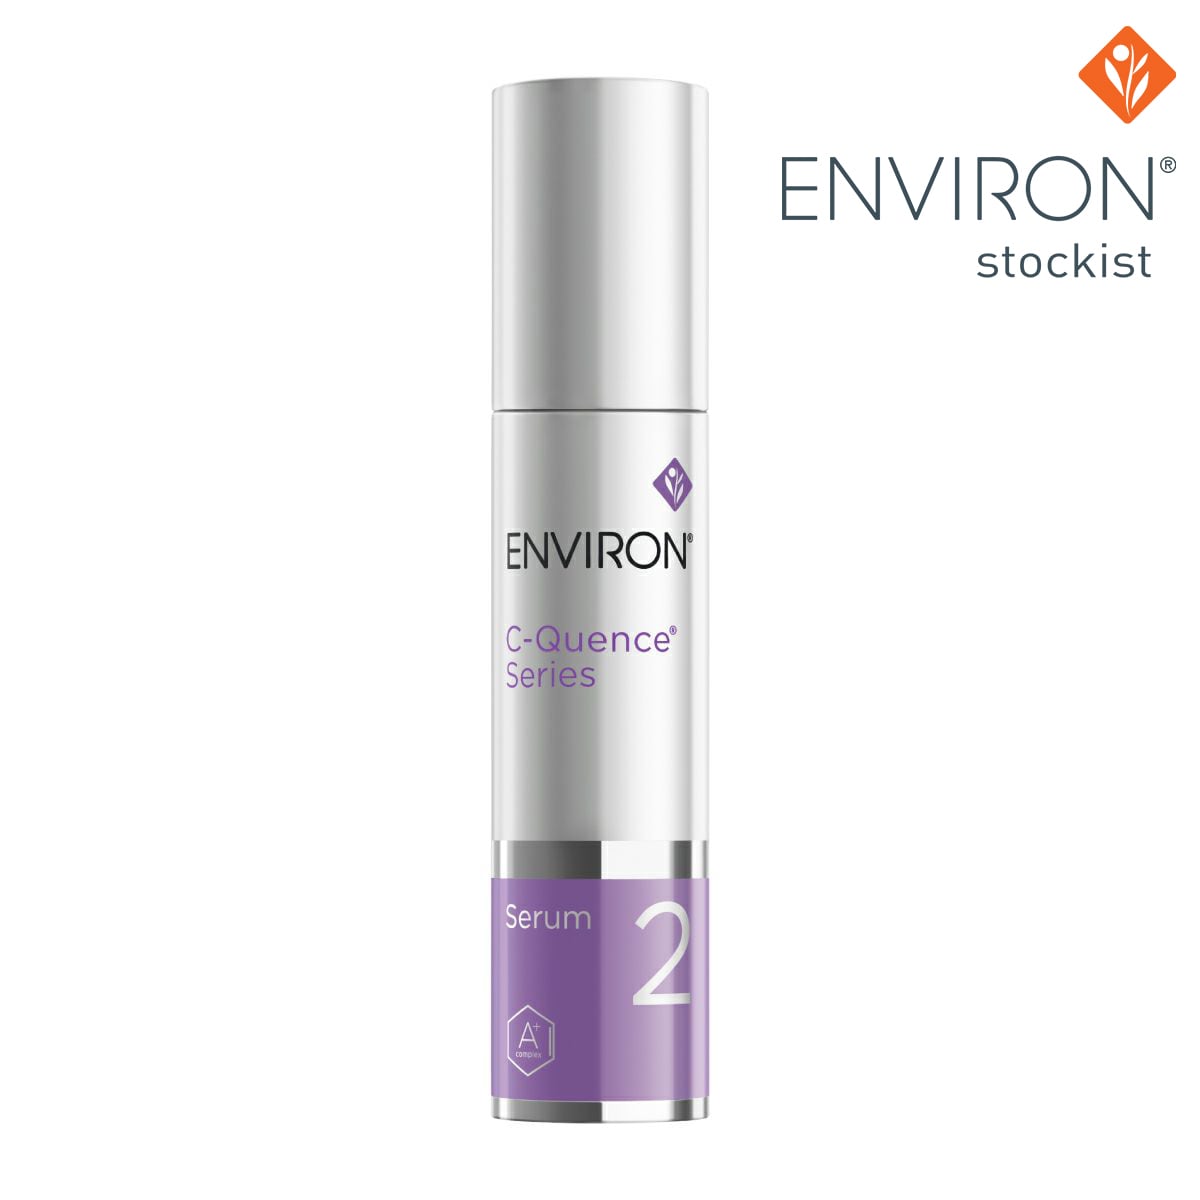 ENVIRON C-quence toner Cクエンス トナー - 化粧水/ローション